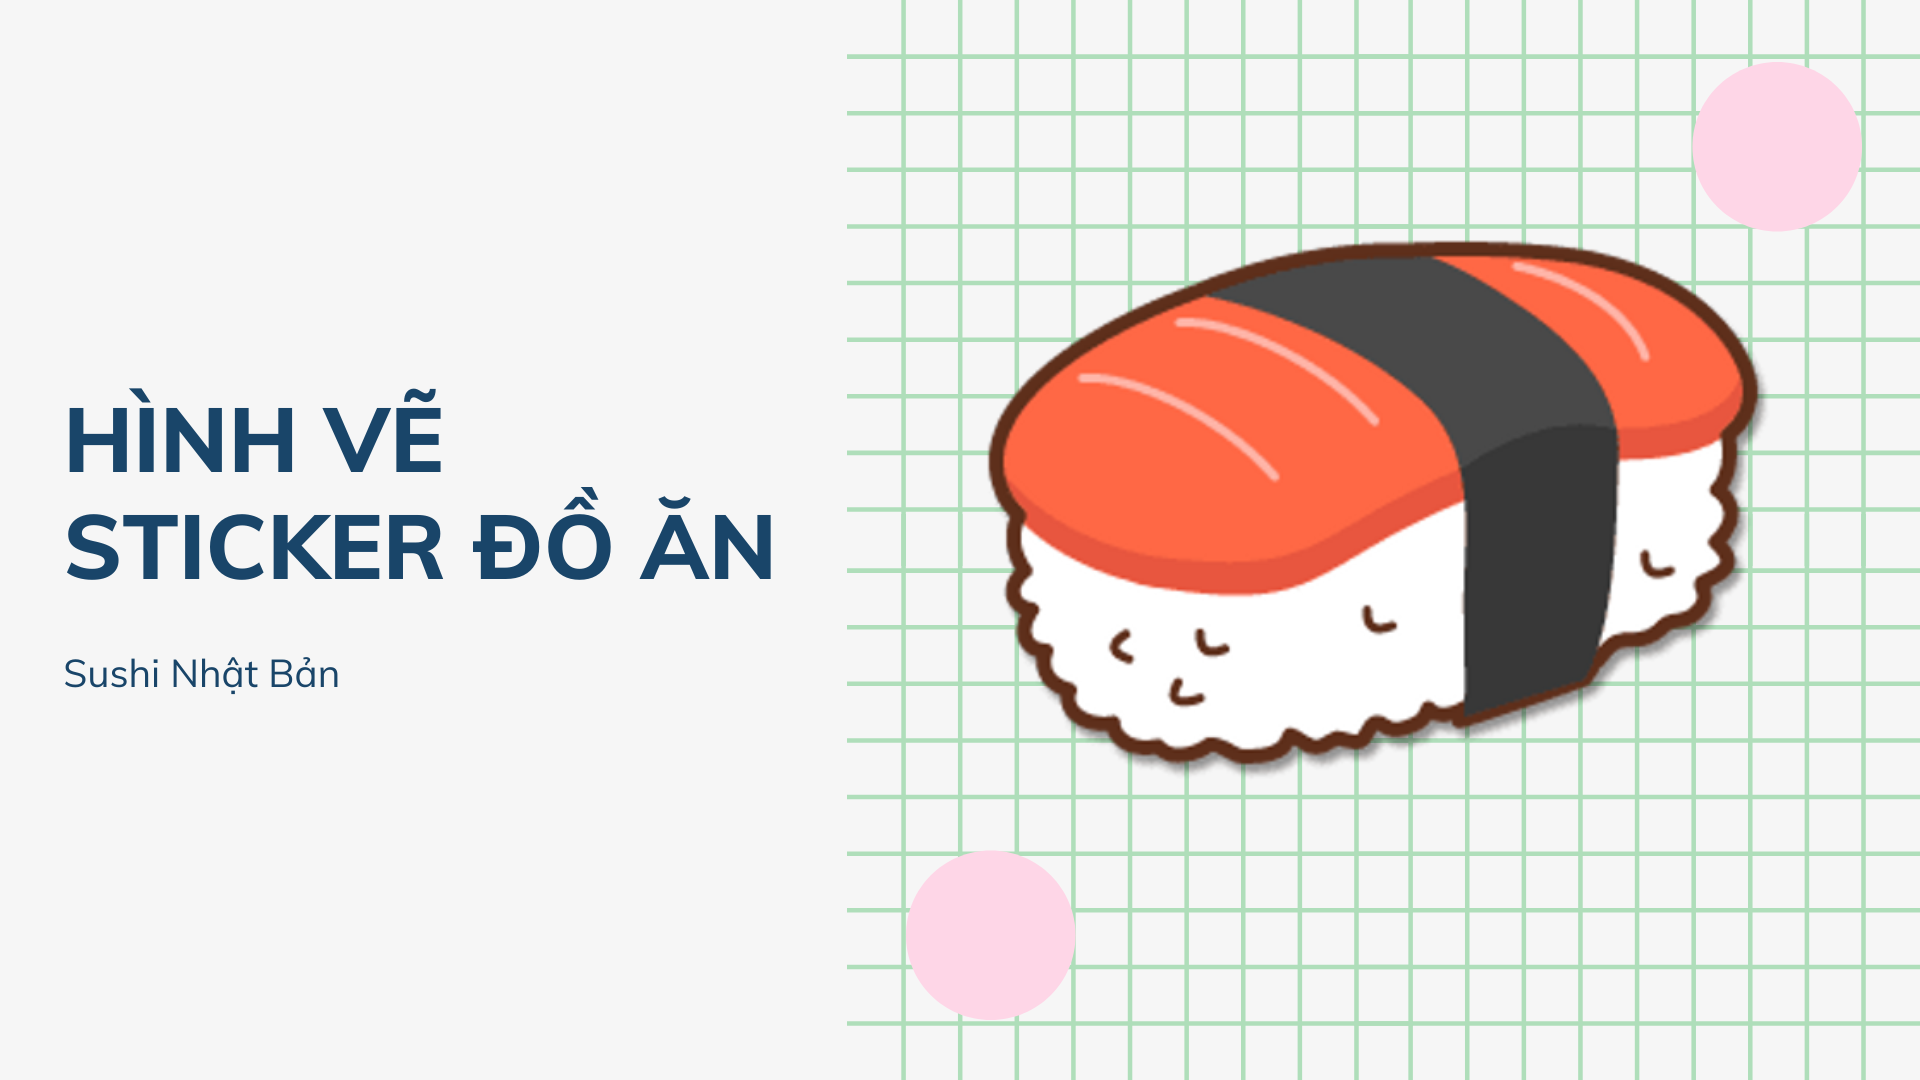 Tổng hợp] Những Hình Vẽ Sticker về đồ ăn dễ thương cute